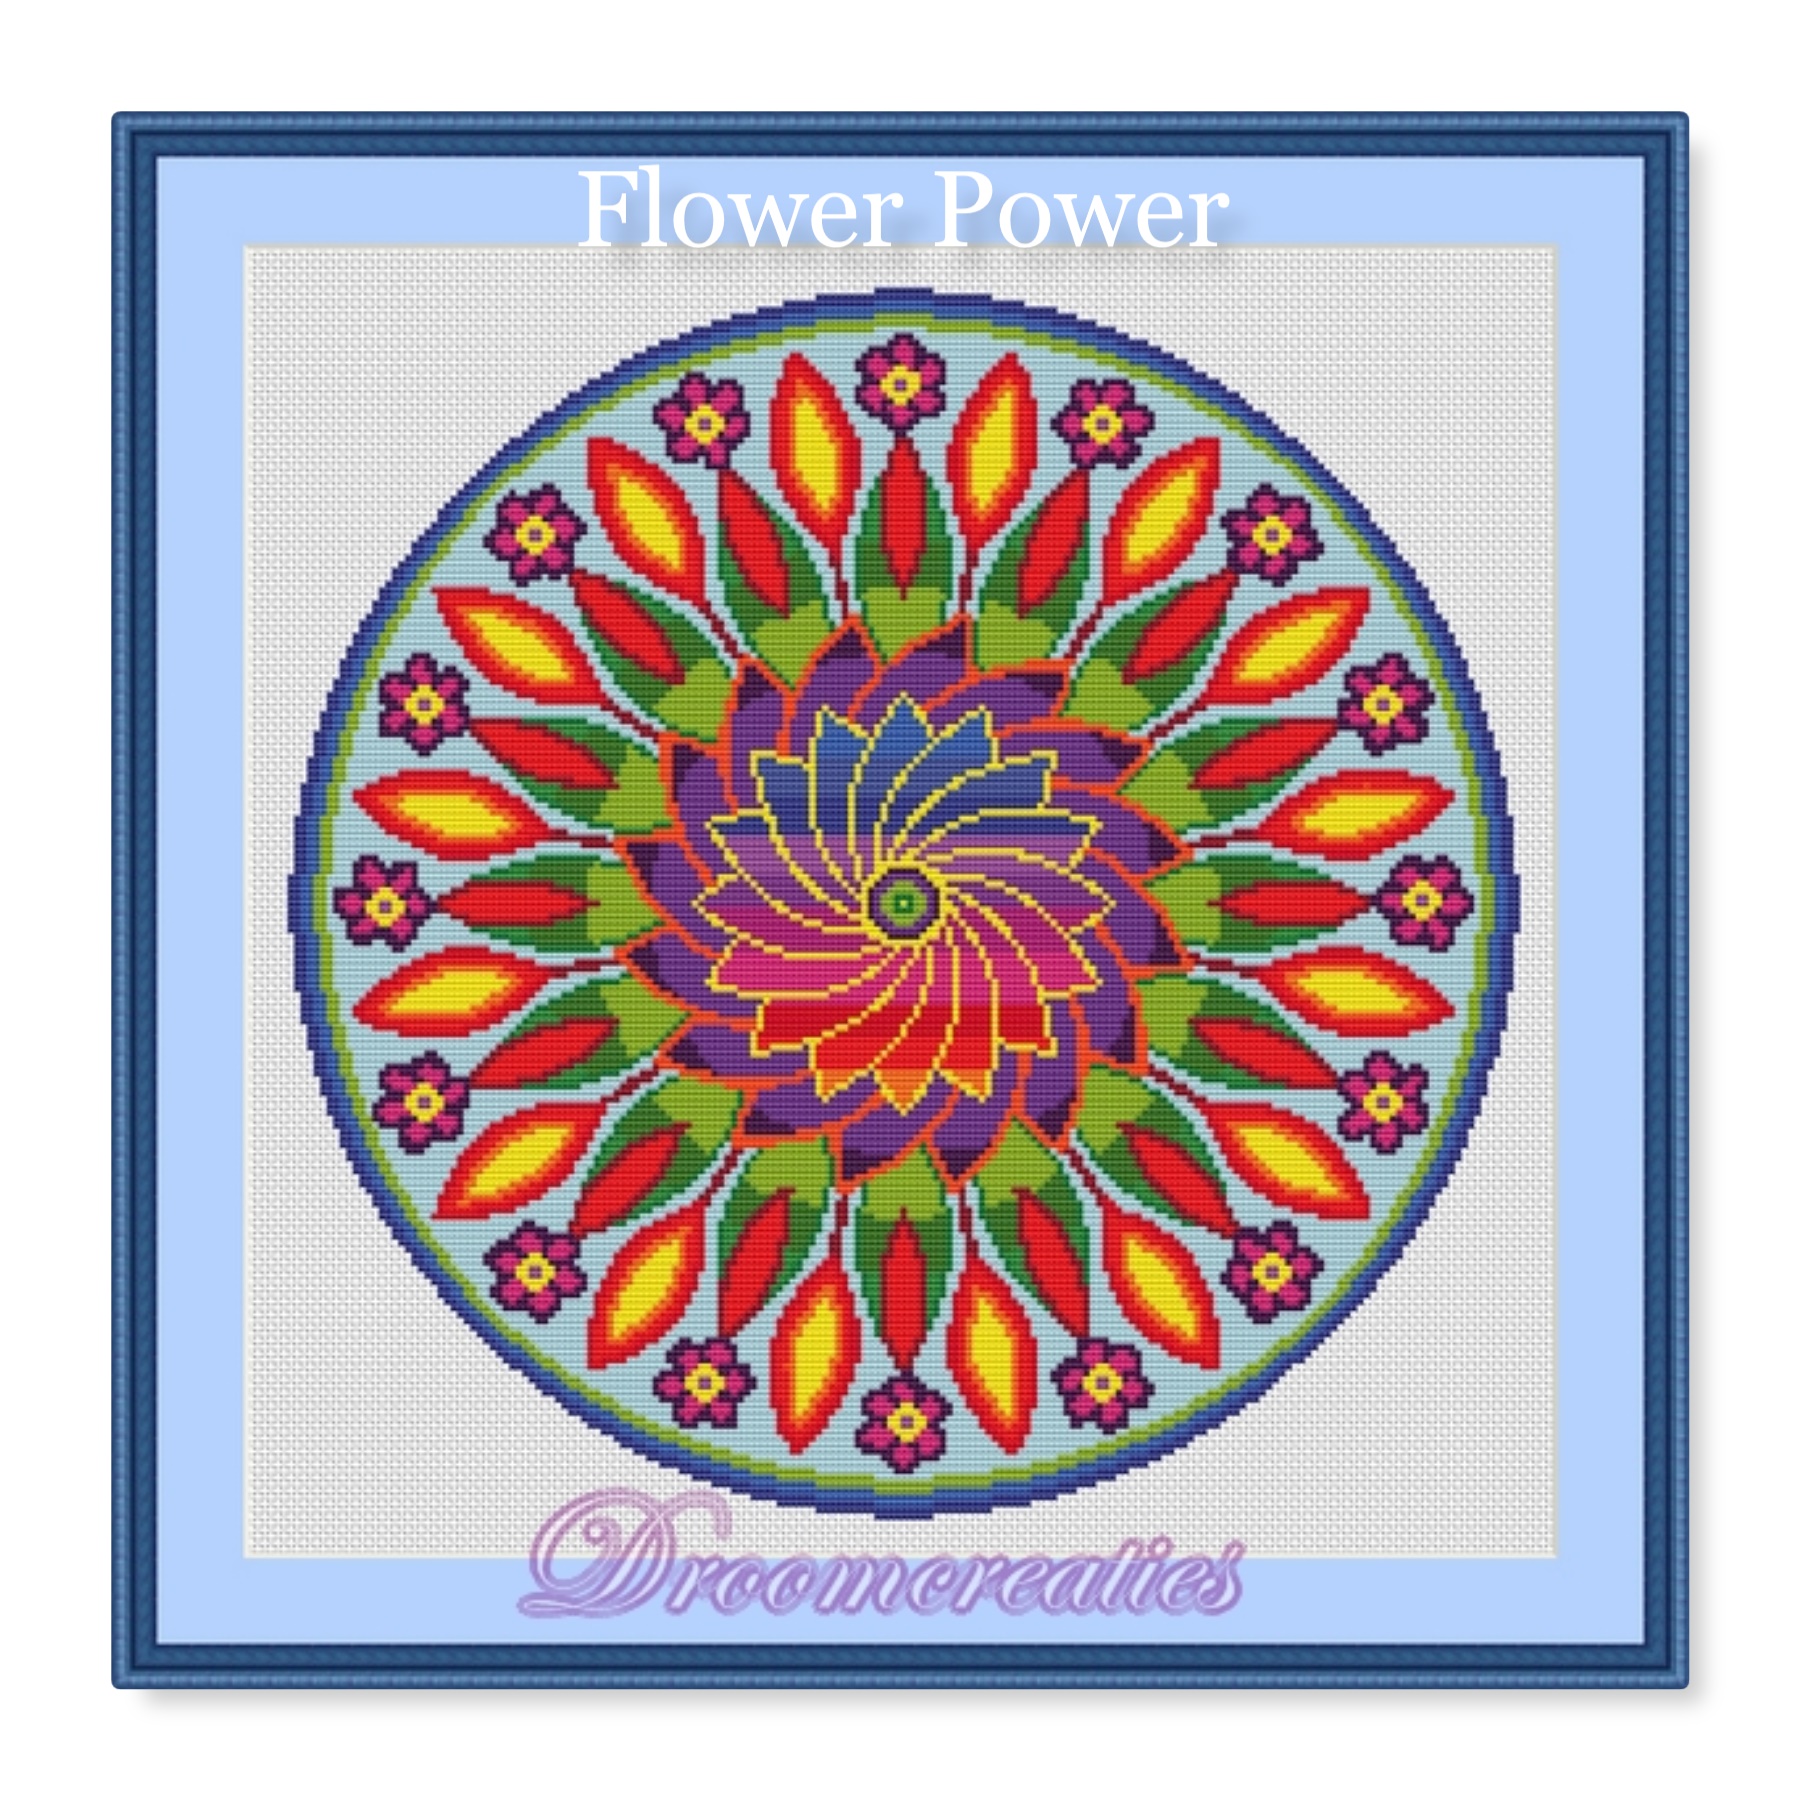 Interactie Blootstellen Verandert in Download borduurpatroon mandala Flower Power ** - Mandalashop Droomcreaties